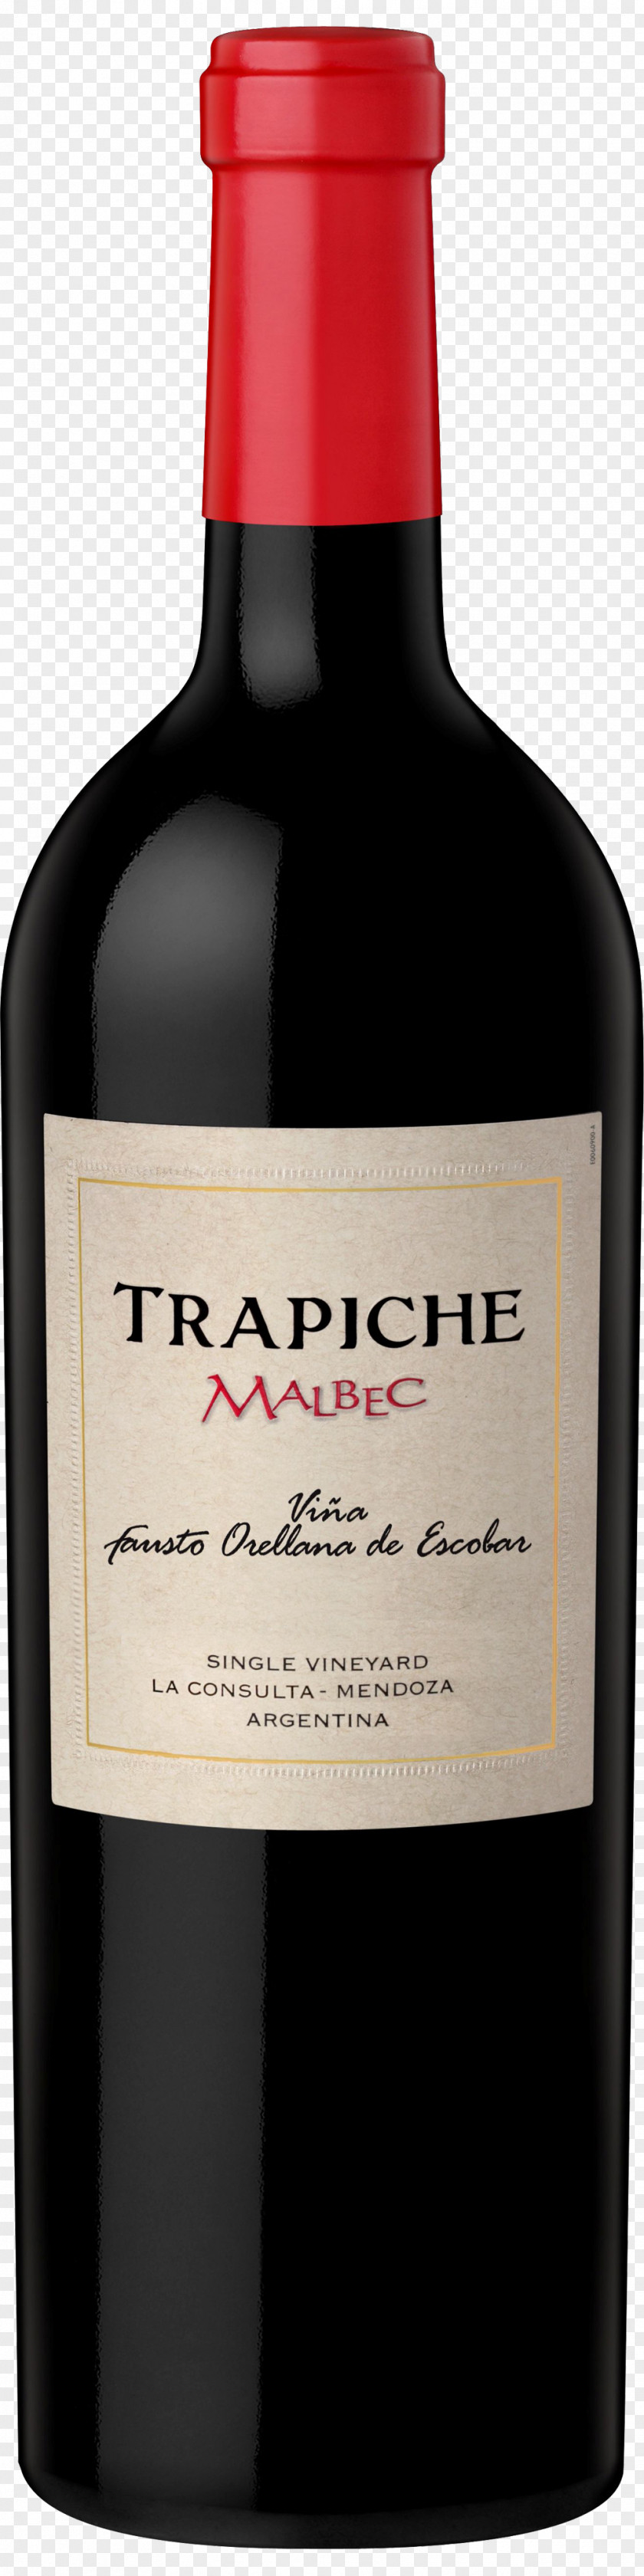 Wine Bessou Bertrand Malbec Trapiche Cabernet Sauvignon PNG